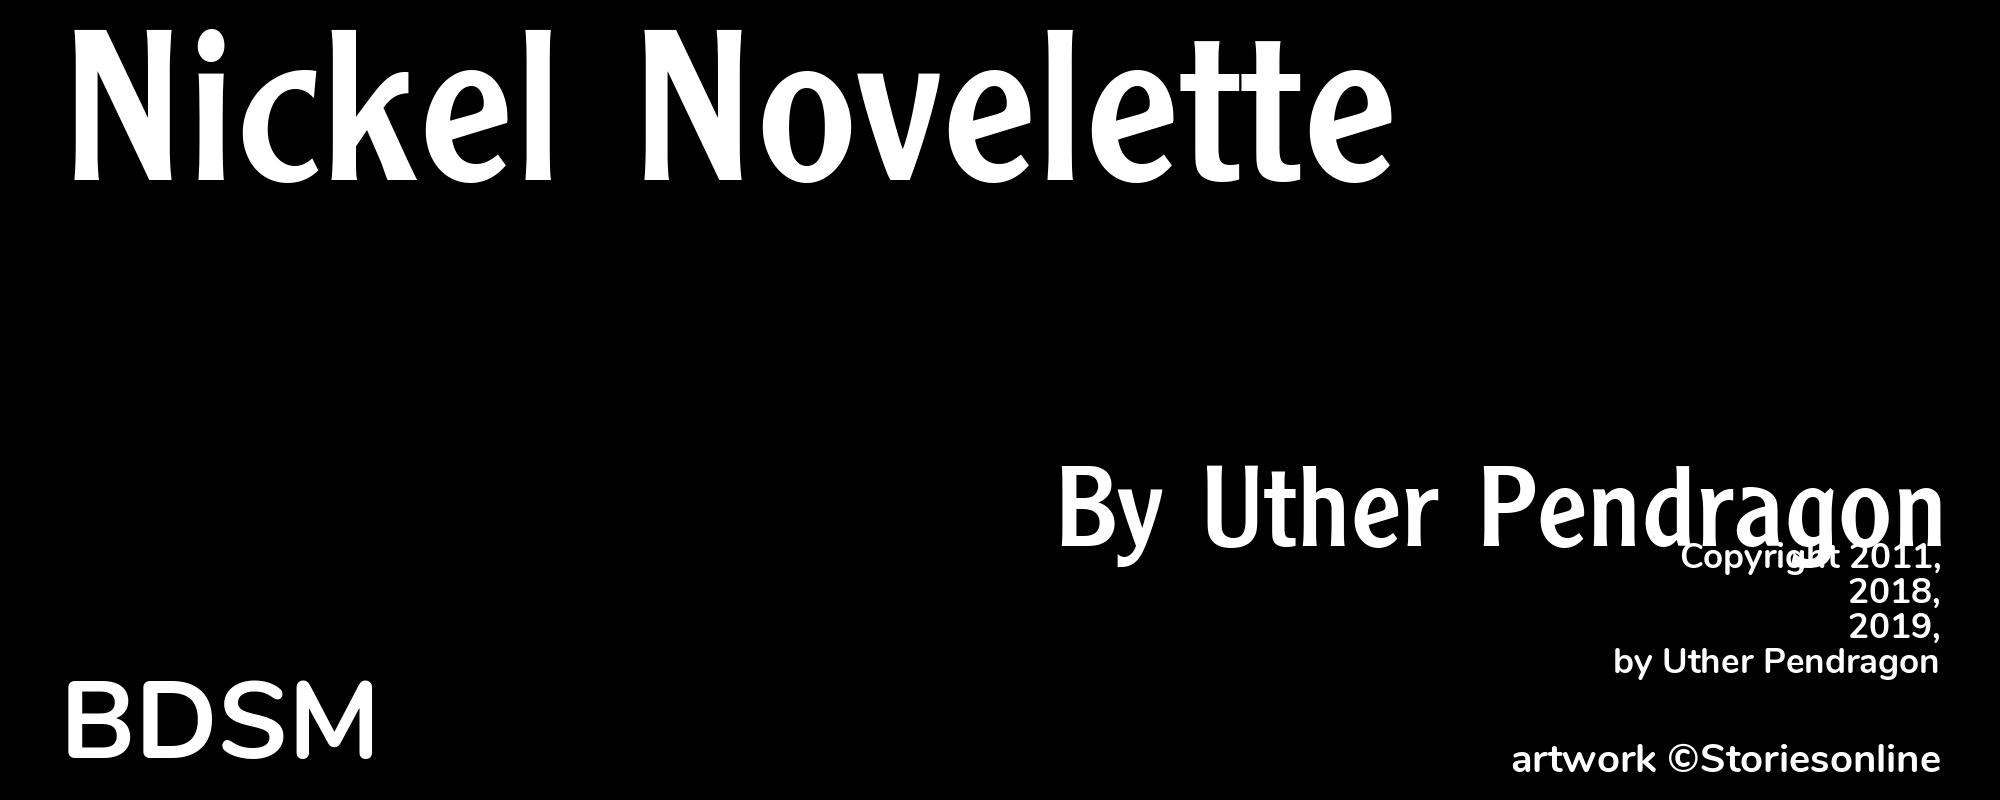 Nickel Novelette - Cover